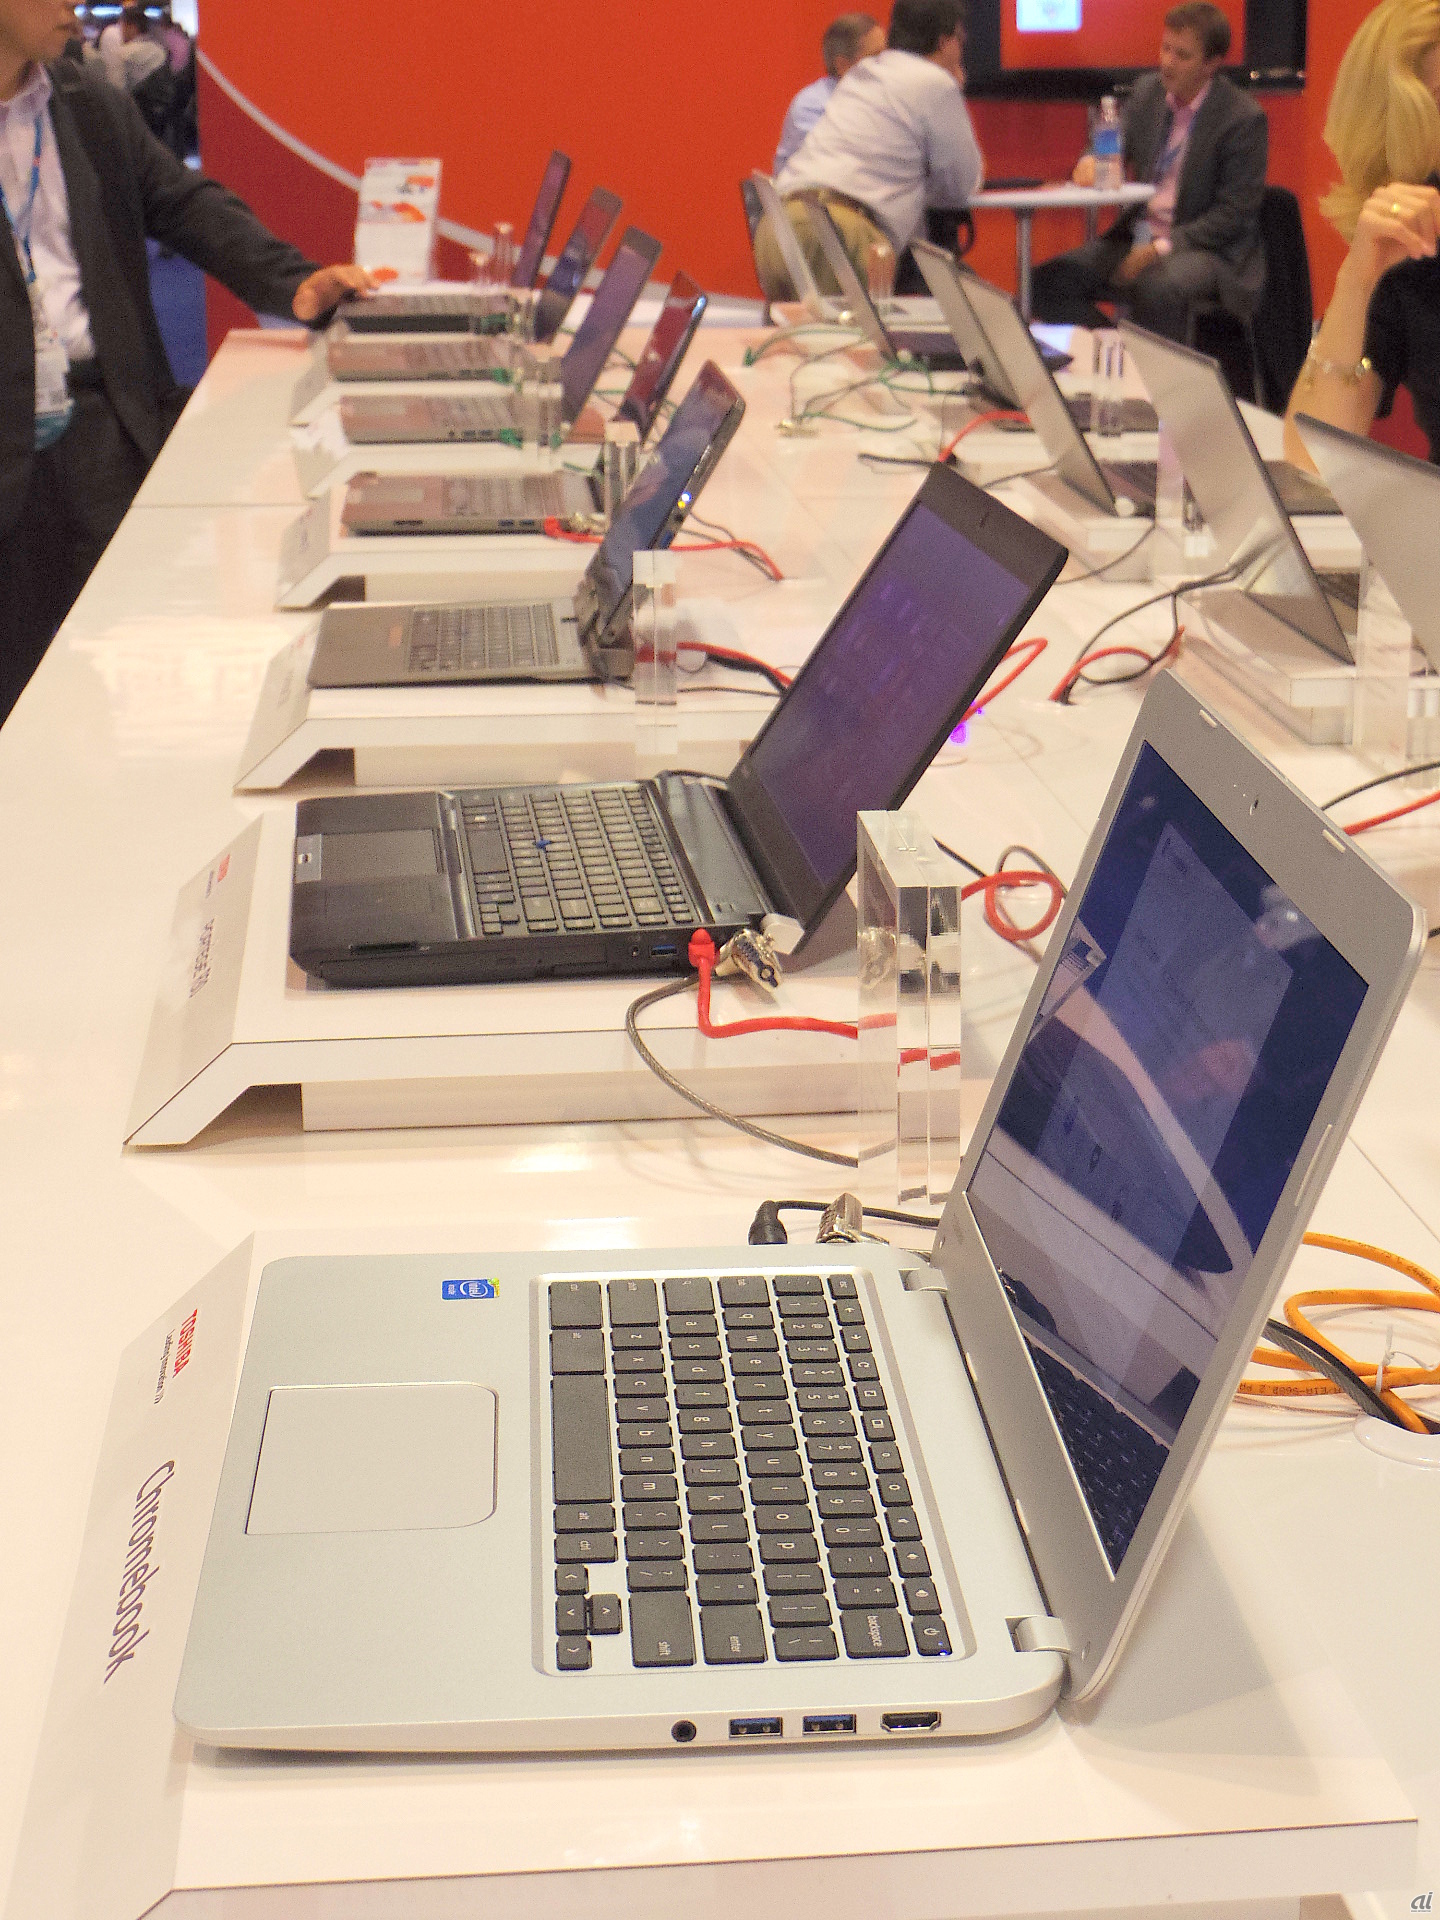 IBM　Pulse 2014の展示会では珍しくPCが出品されていた東芝のブース